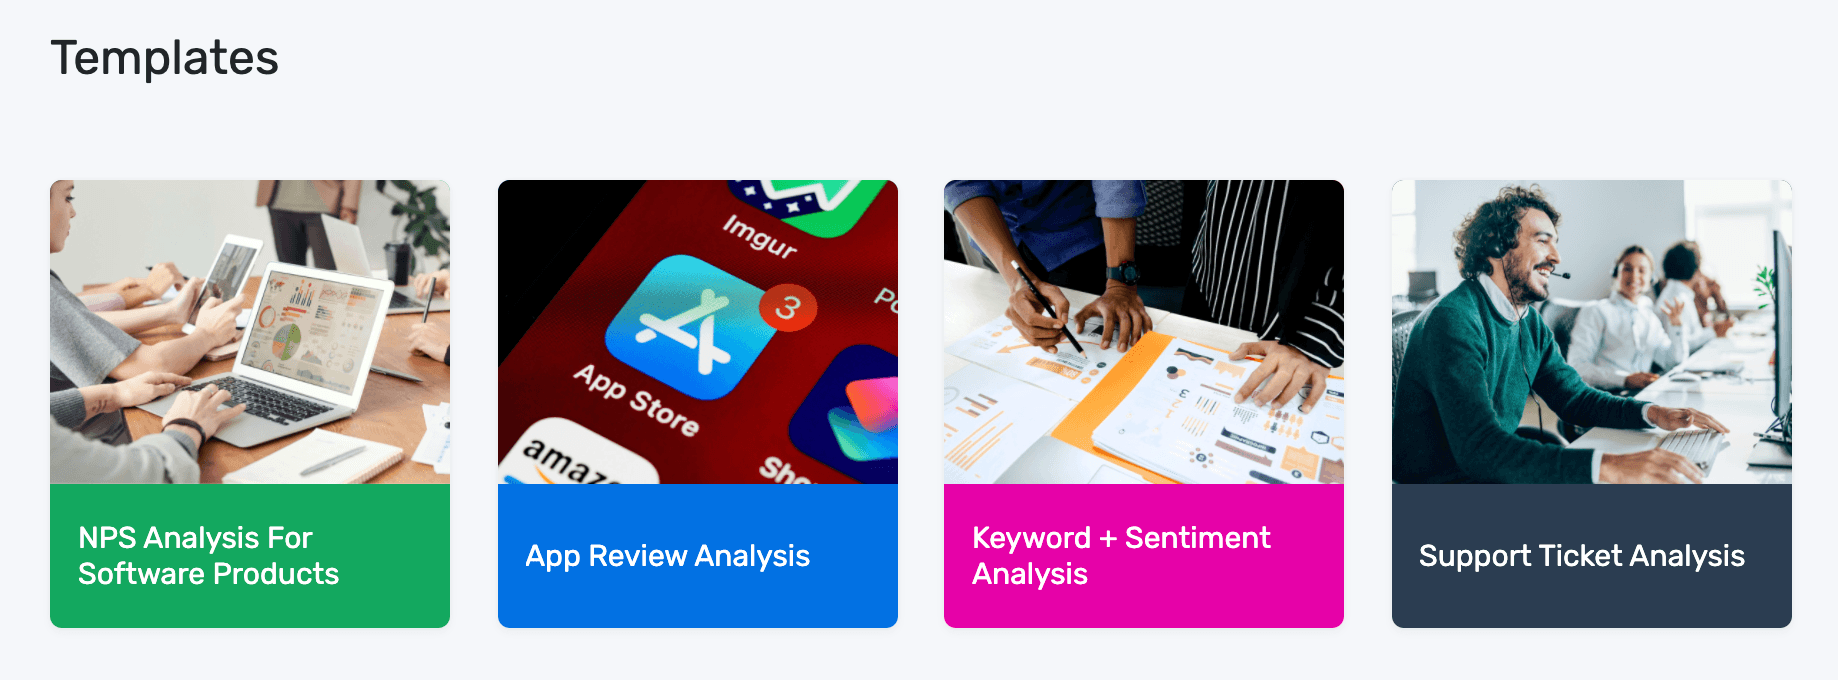 MonkeyLearn's customer feedback analysis templates